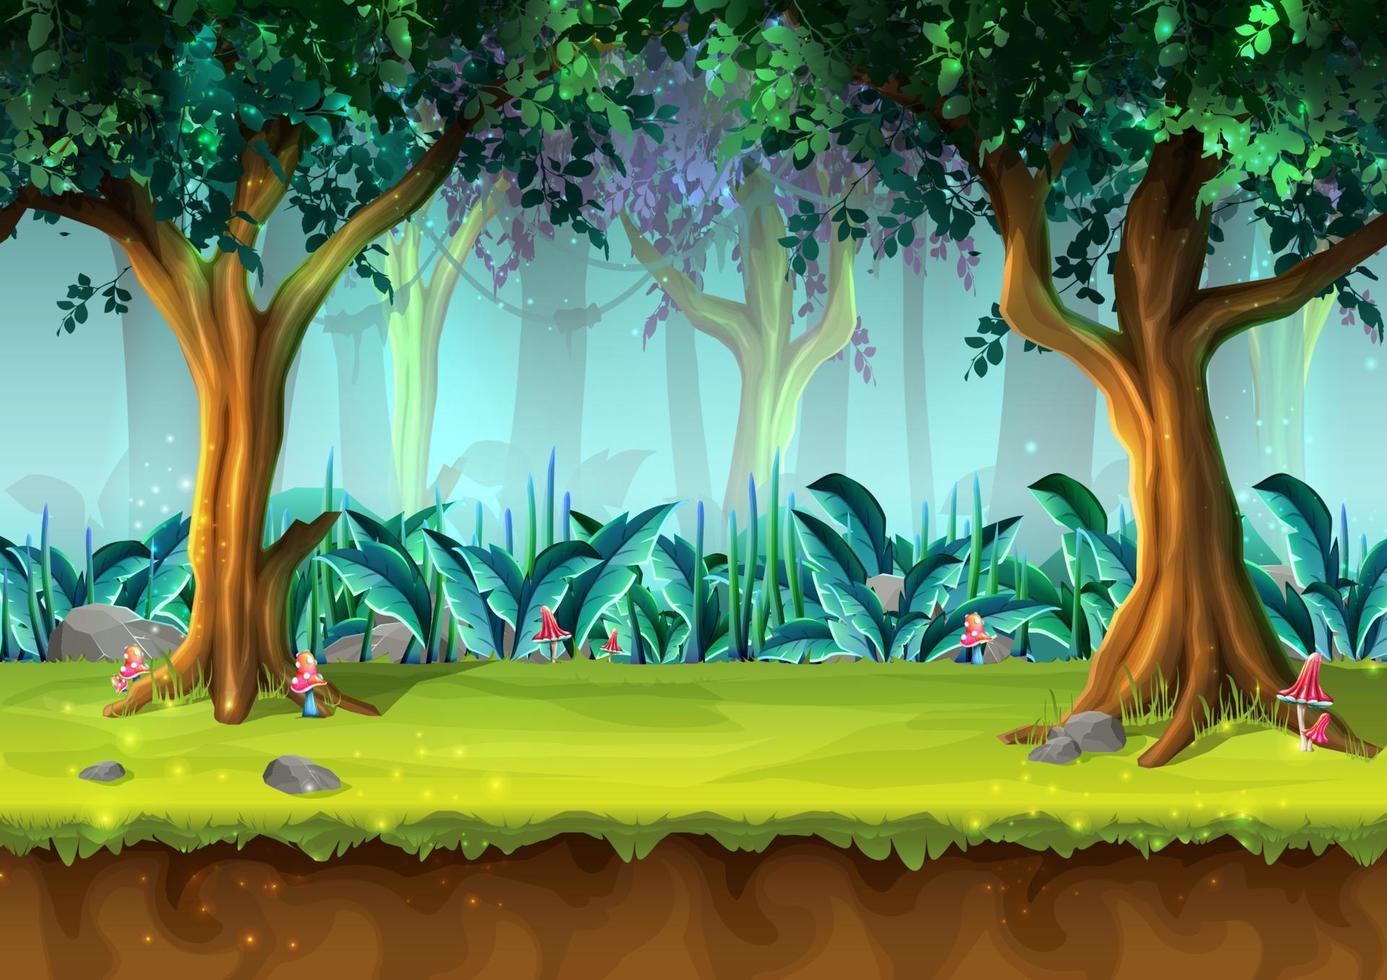 foresta pluviale misteriosa in stile cartone animato vettoriale con alberi e funghi, illustrazione per la progettazione di giochi, app, siti Web.